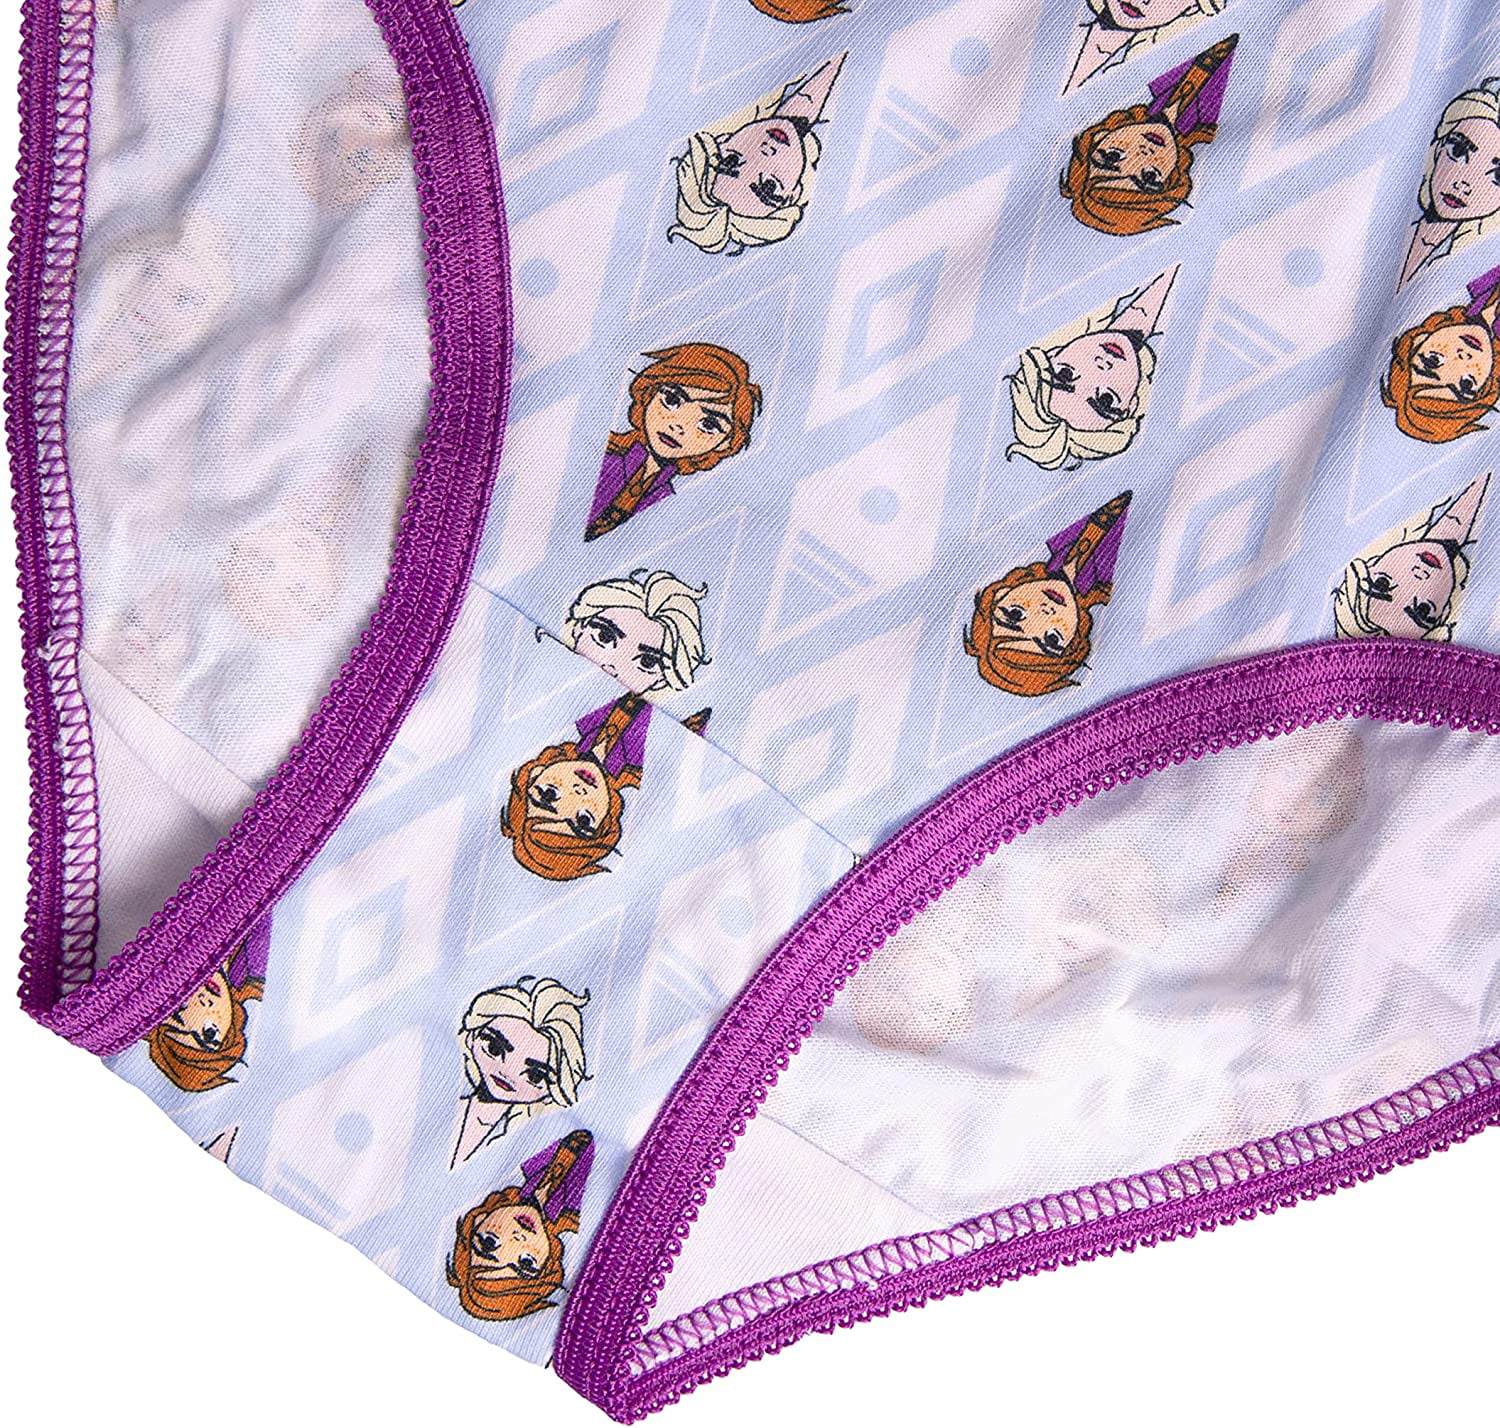 Disney Frozen Girls Panties Underwear - 8-Pack Toddler/Little Kid/Big Kid  Size Briefs Princess Elsa Anna 